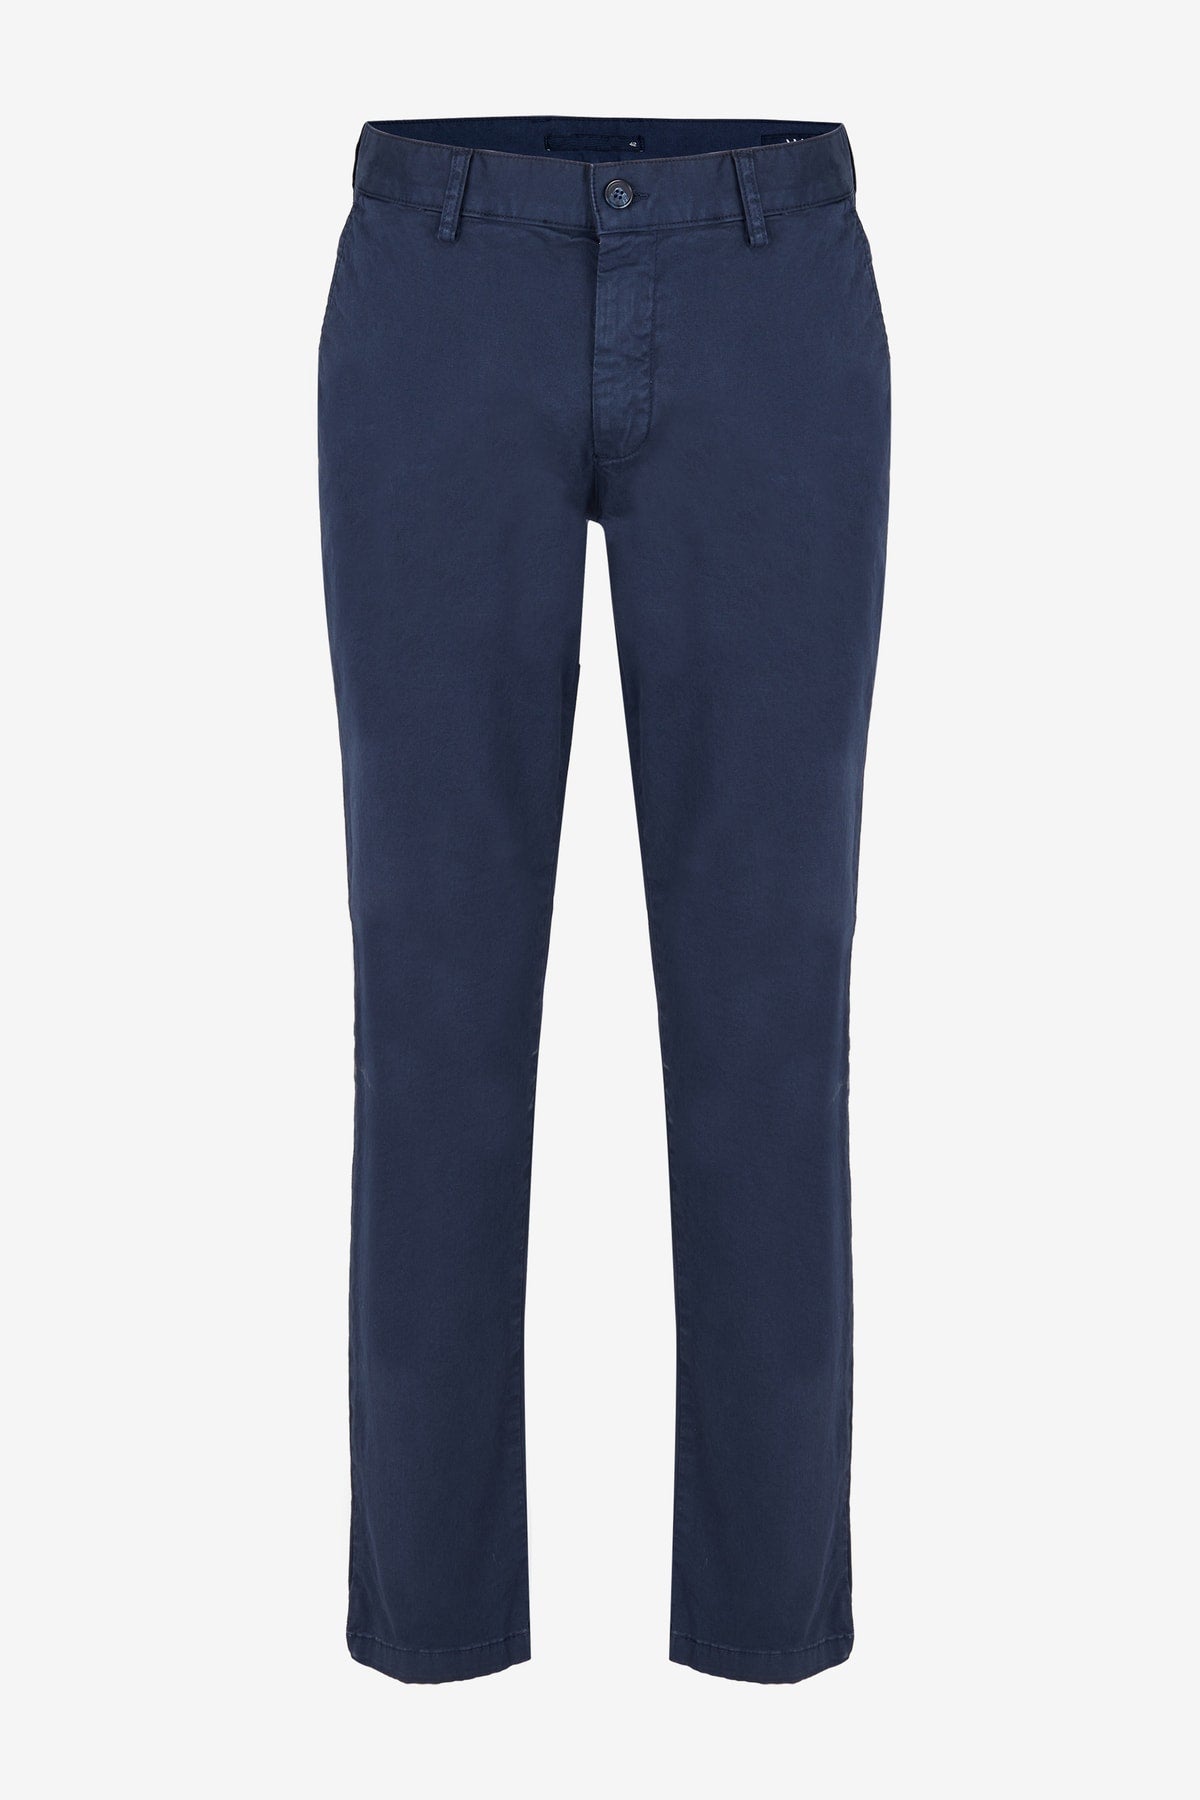 Dark Navy Blue Chino Pants